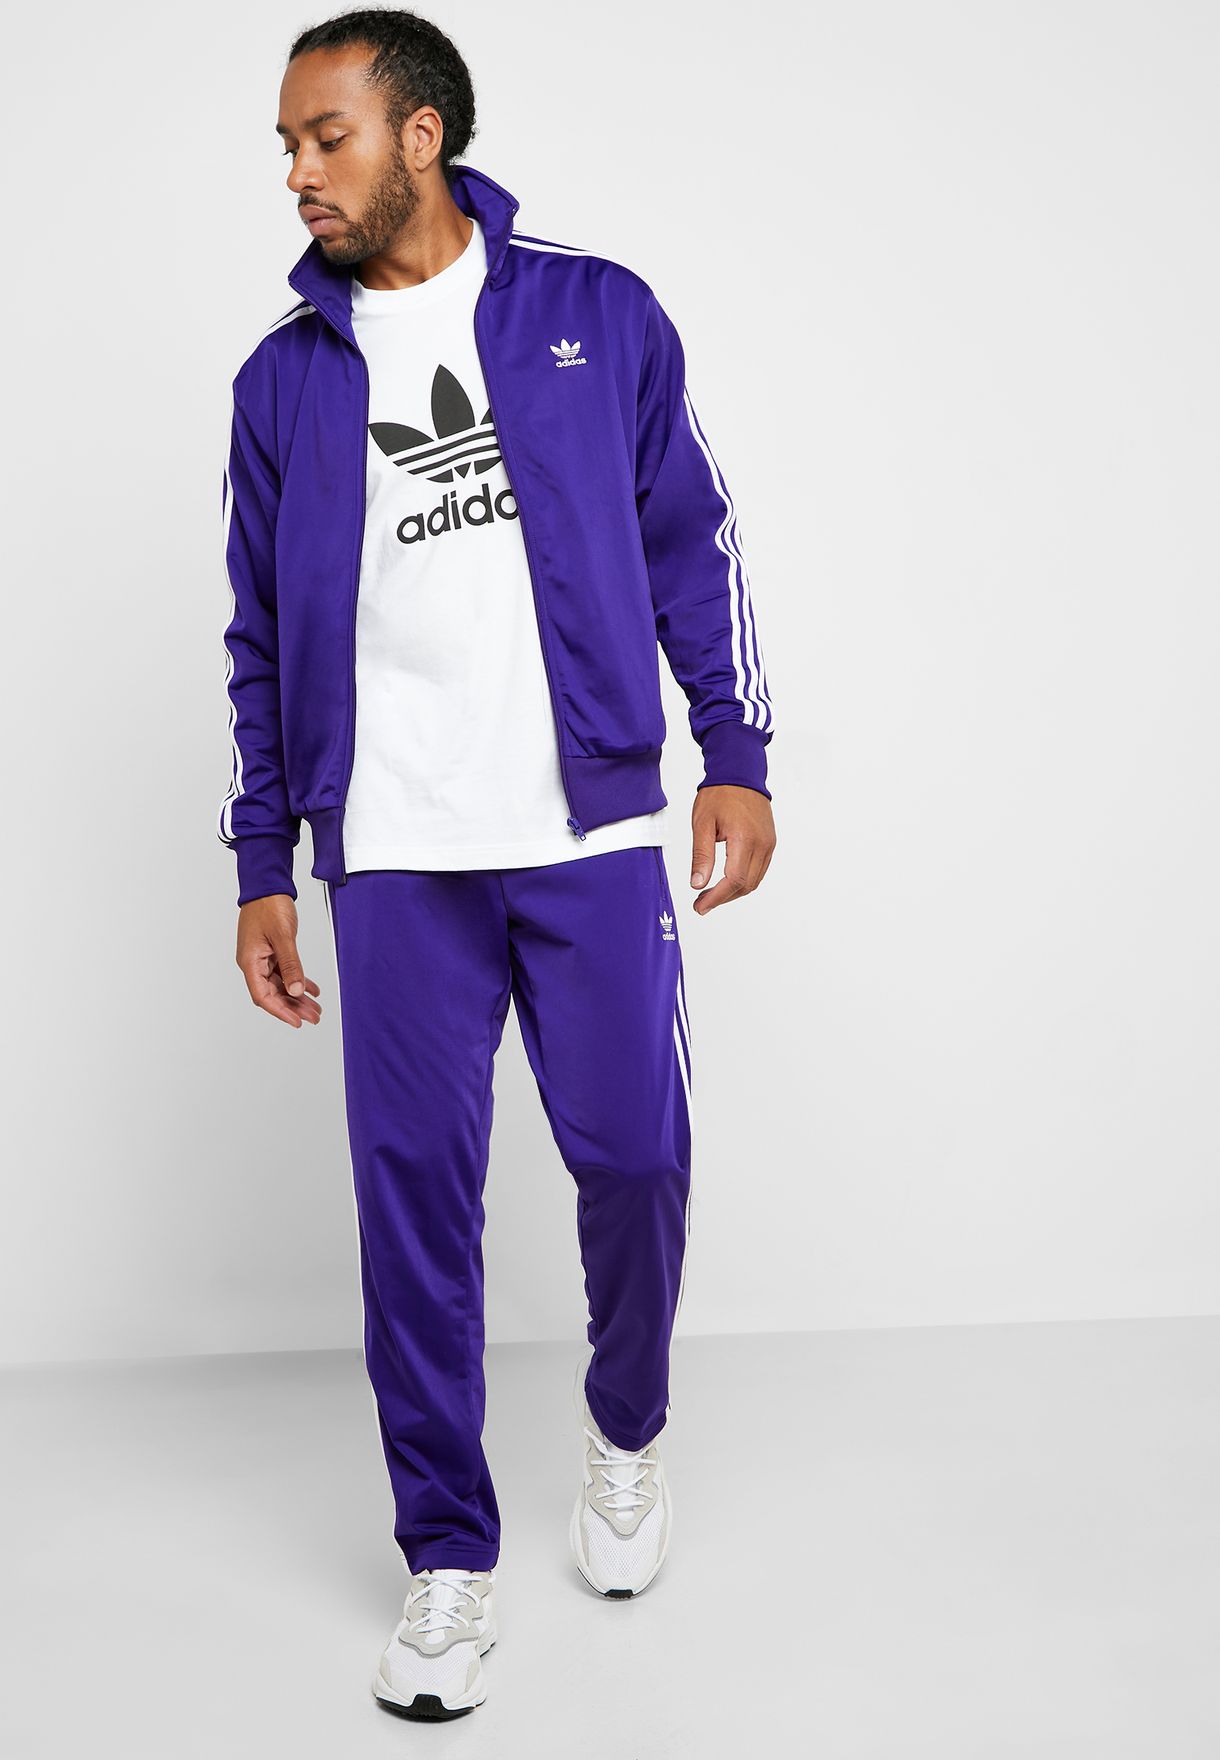 adidas tracksuit mens purple